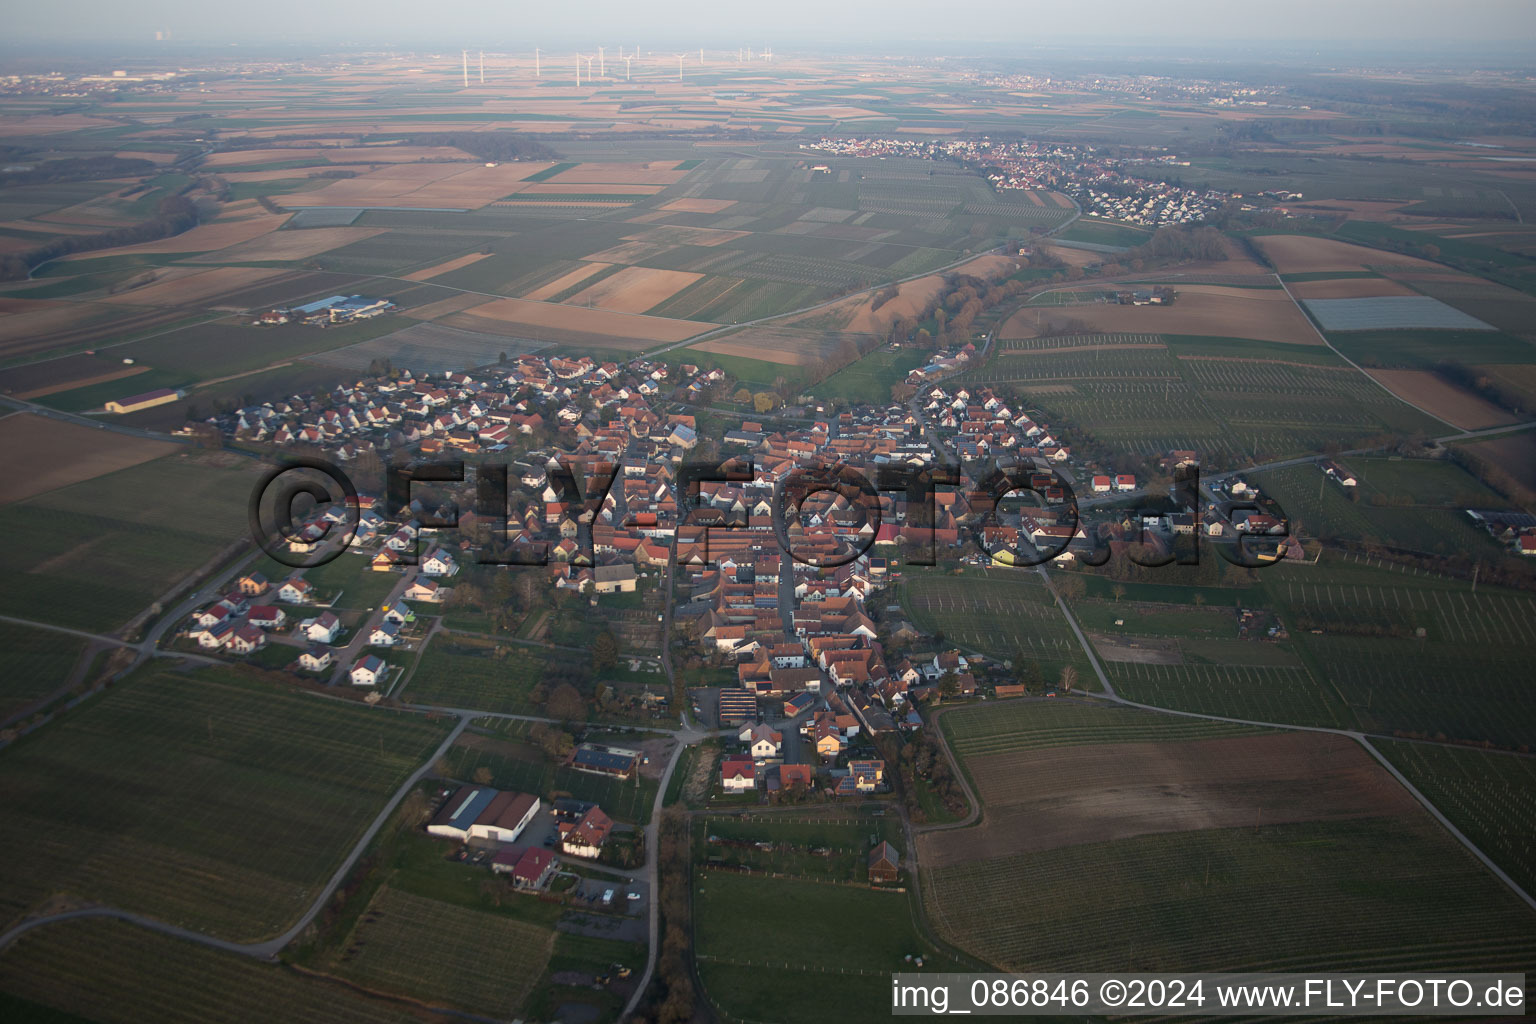 Vue aérienne de Champs agricoles et surfaces utilisables à Impflingen dans le département Rhénanie-Palatinat, Allemagne